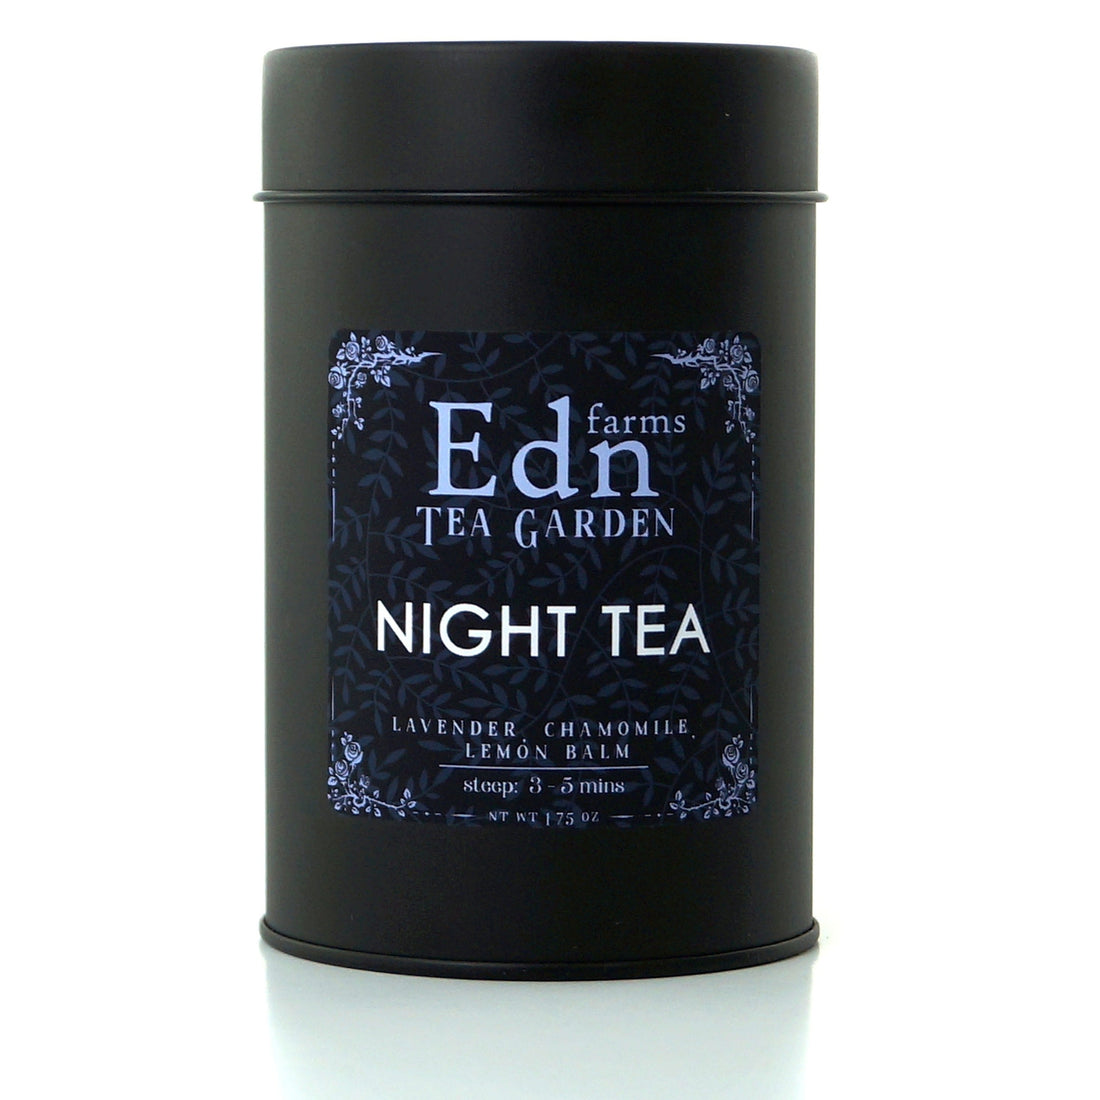 NIGHT TEA – LOOSE LEAF TEA